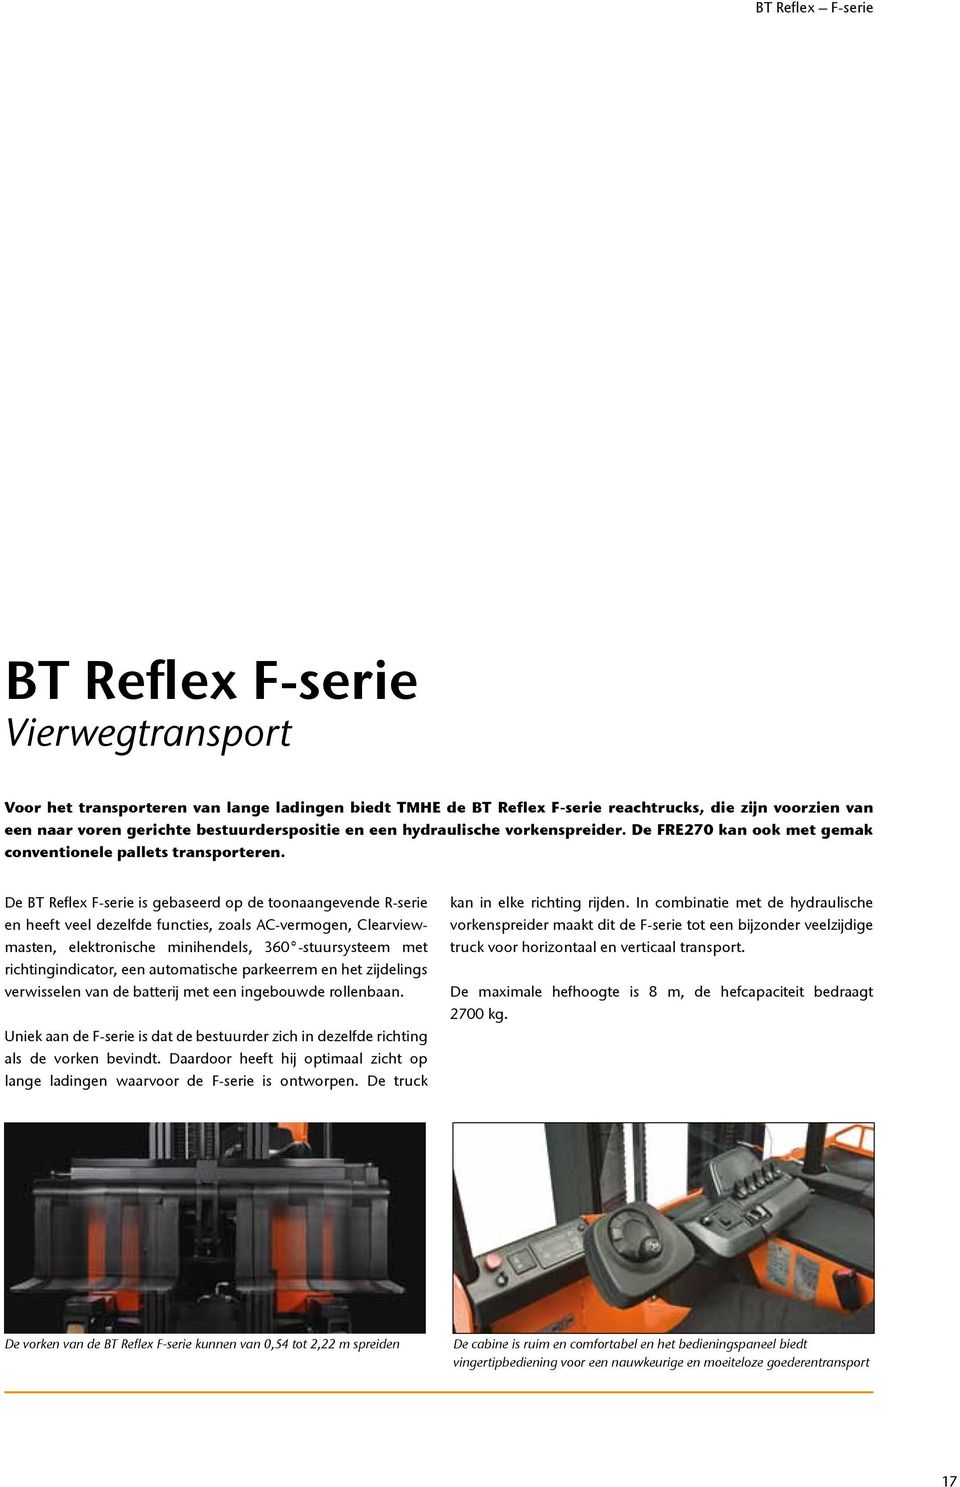 De BT Reflex F-serie is gebaseerd op de toonaangevende R-serie en heeft veel dezelfde functies, zoals AC-vermogen, Clearviewmasten, elektronische minihendels, 360 -stuursysteem met richtingindicator,